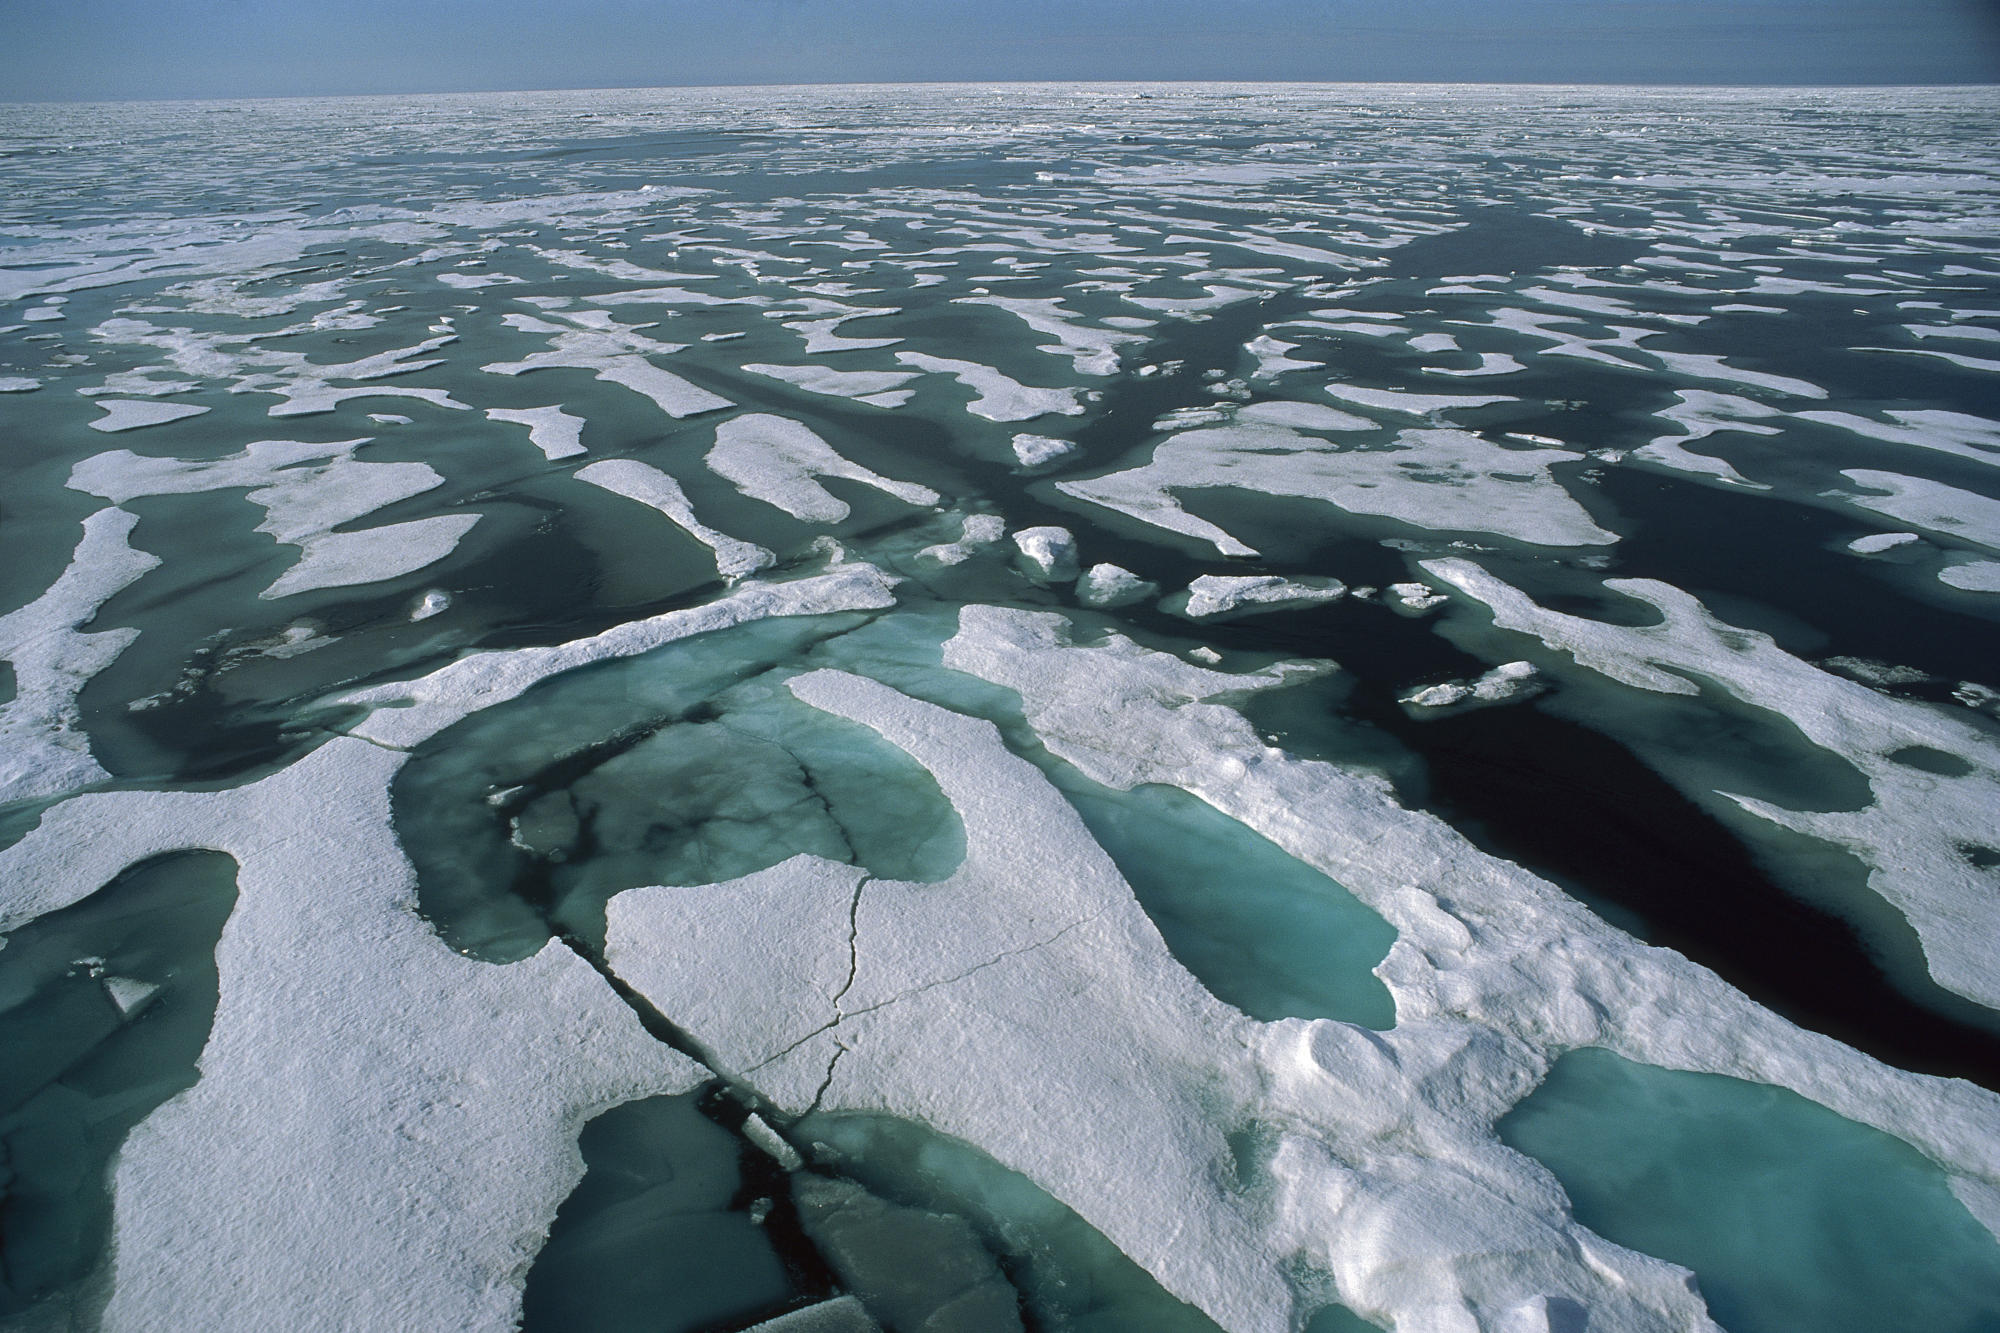 Река бассейна восточно сибирского моря. Северный Ледовитый океан Восточно-Сибирское море. Арктика Северный Ледовитый океан. Северный Ледовитый океан лед море. Льды Северного Ледовитого океана.